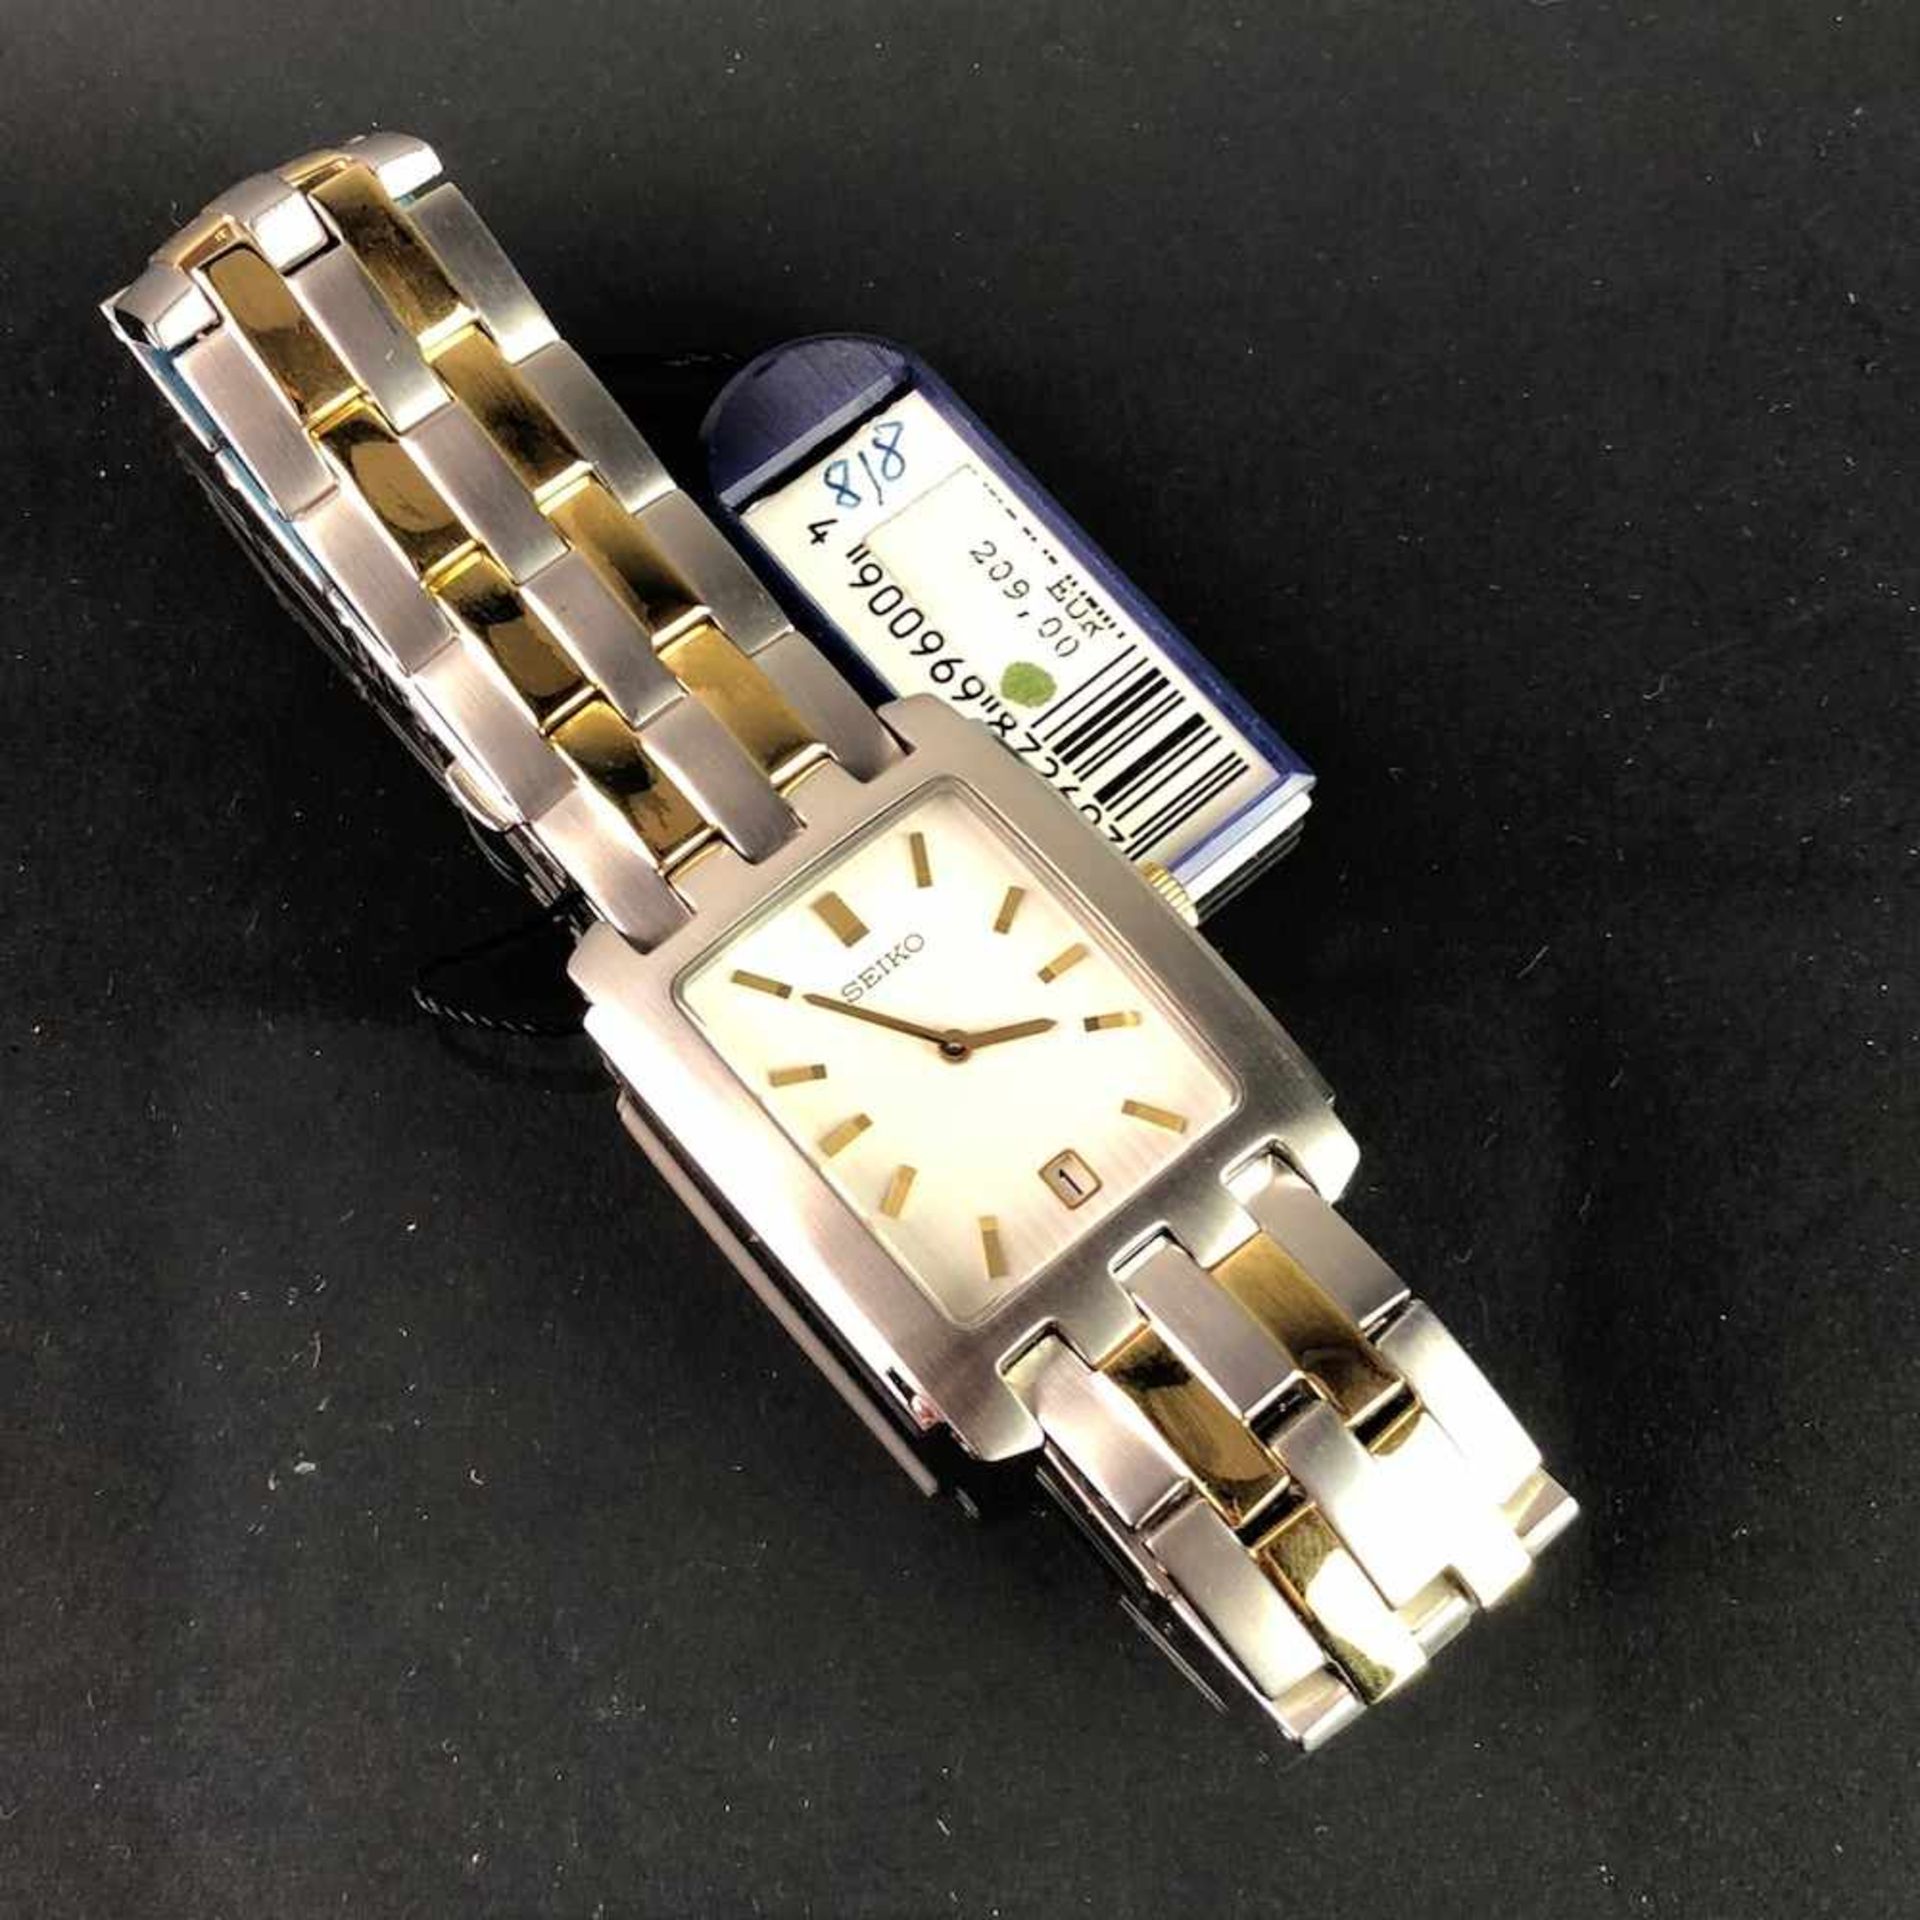 Armbanduhr: "SEIKO". Edelstahl matiert und bicolor. Mineralglas. Ungetragen aus Uhrmachernachlaß.